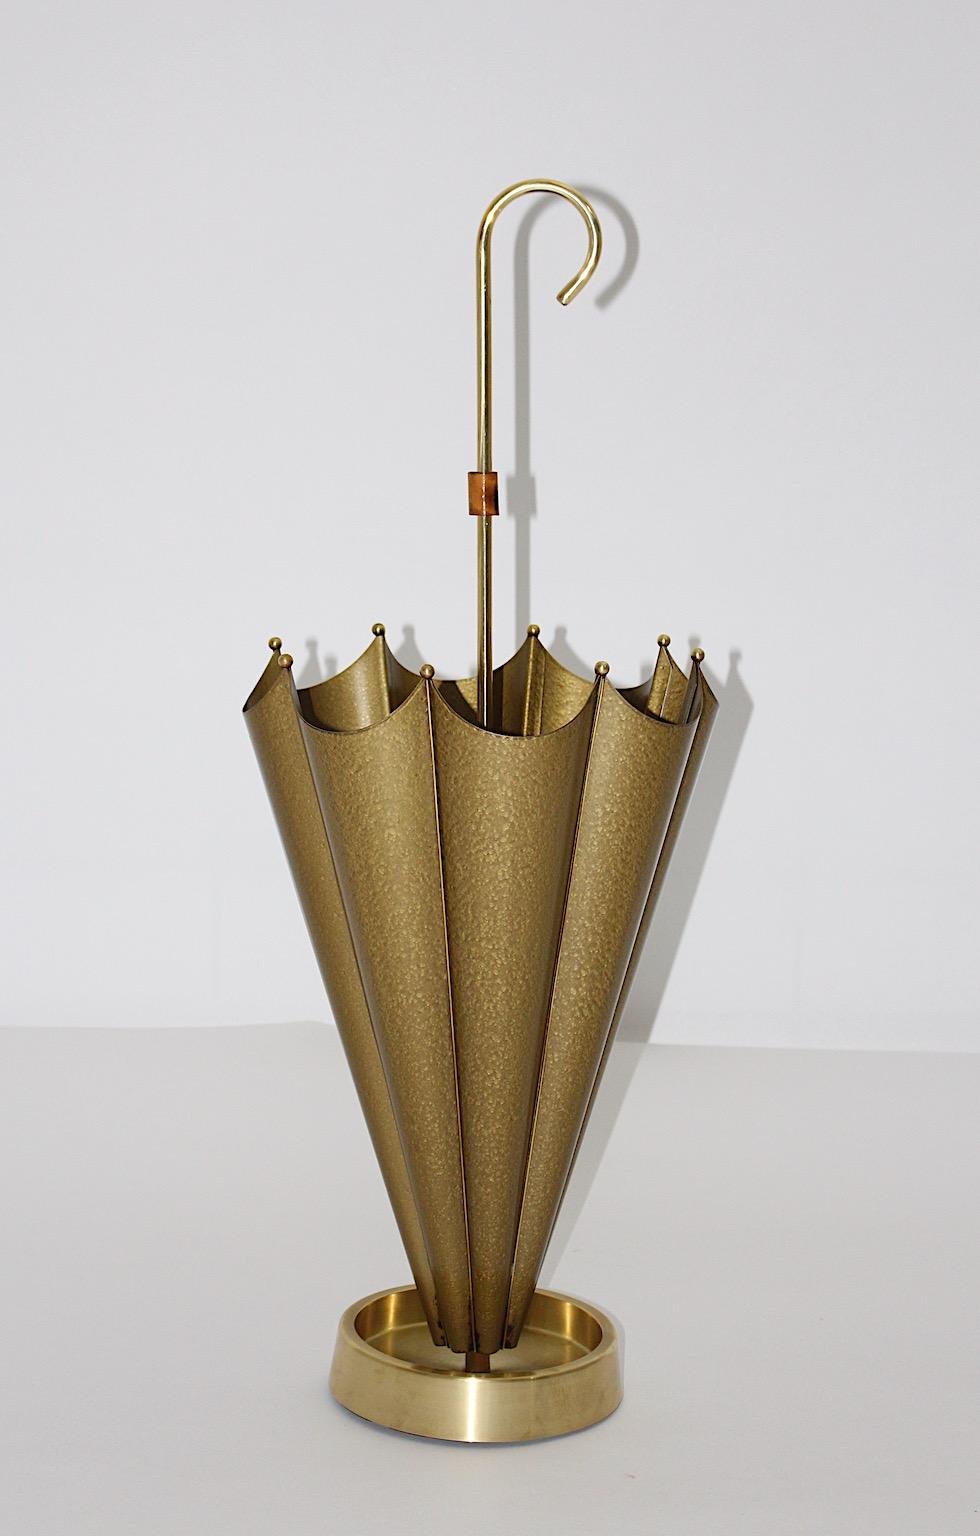 Mid-Century Modern vintage Schirmständer aus Metall und Messing in gold metallic Farbton 1950er Jahre Italien.
Der atemberaubende Schirmständer zeigt eine Messing-Tropfschale, Messingkugeln und einen schirmartigen Ständer aus goldenem Metall.
Der